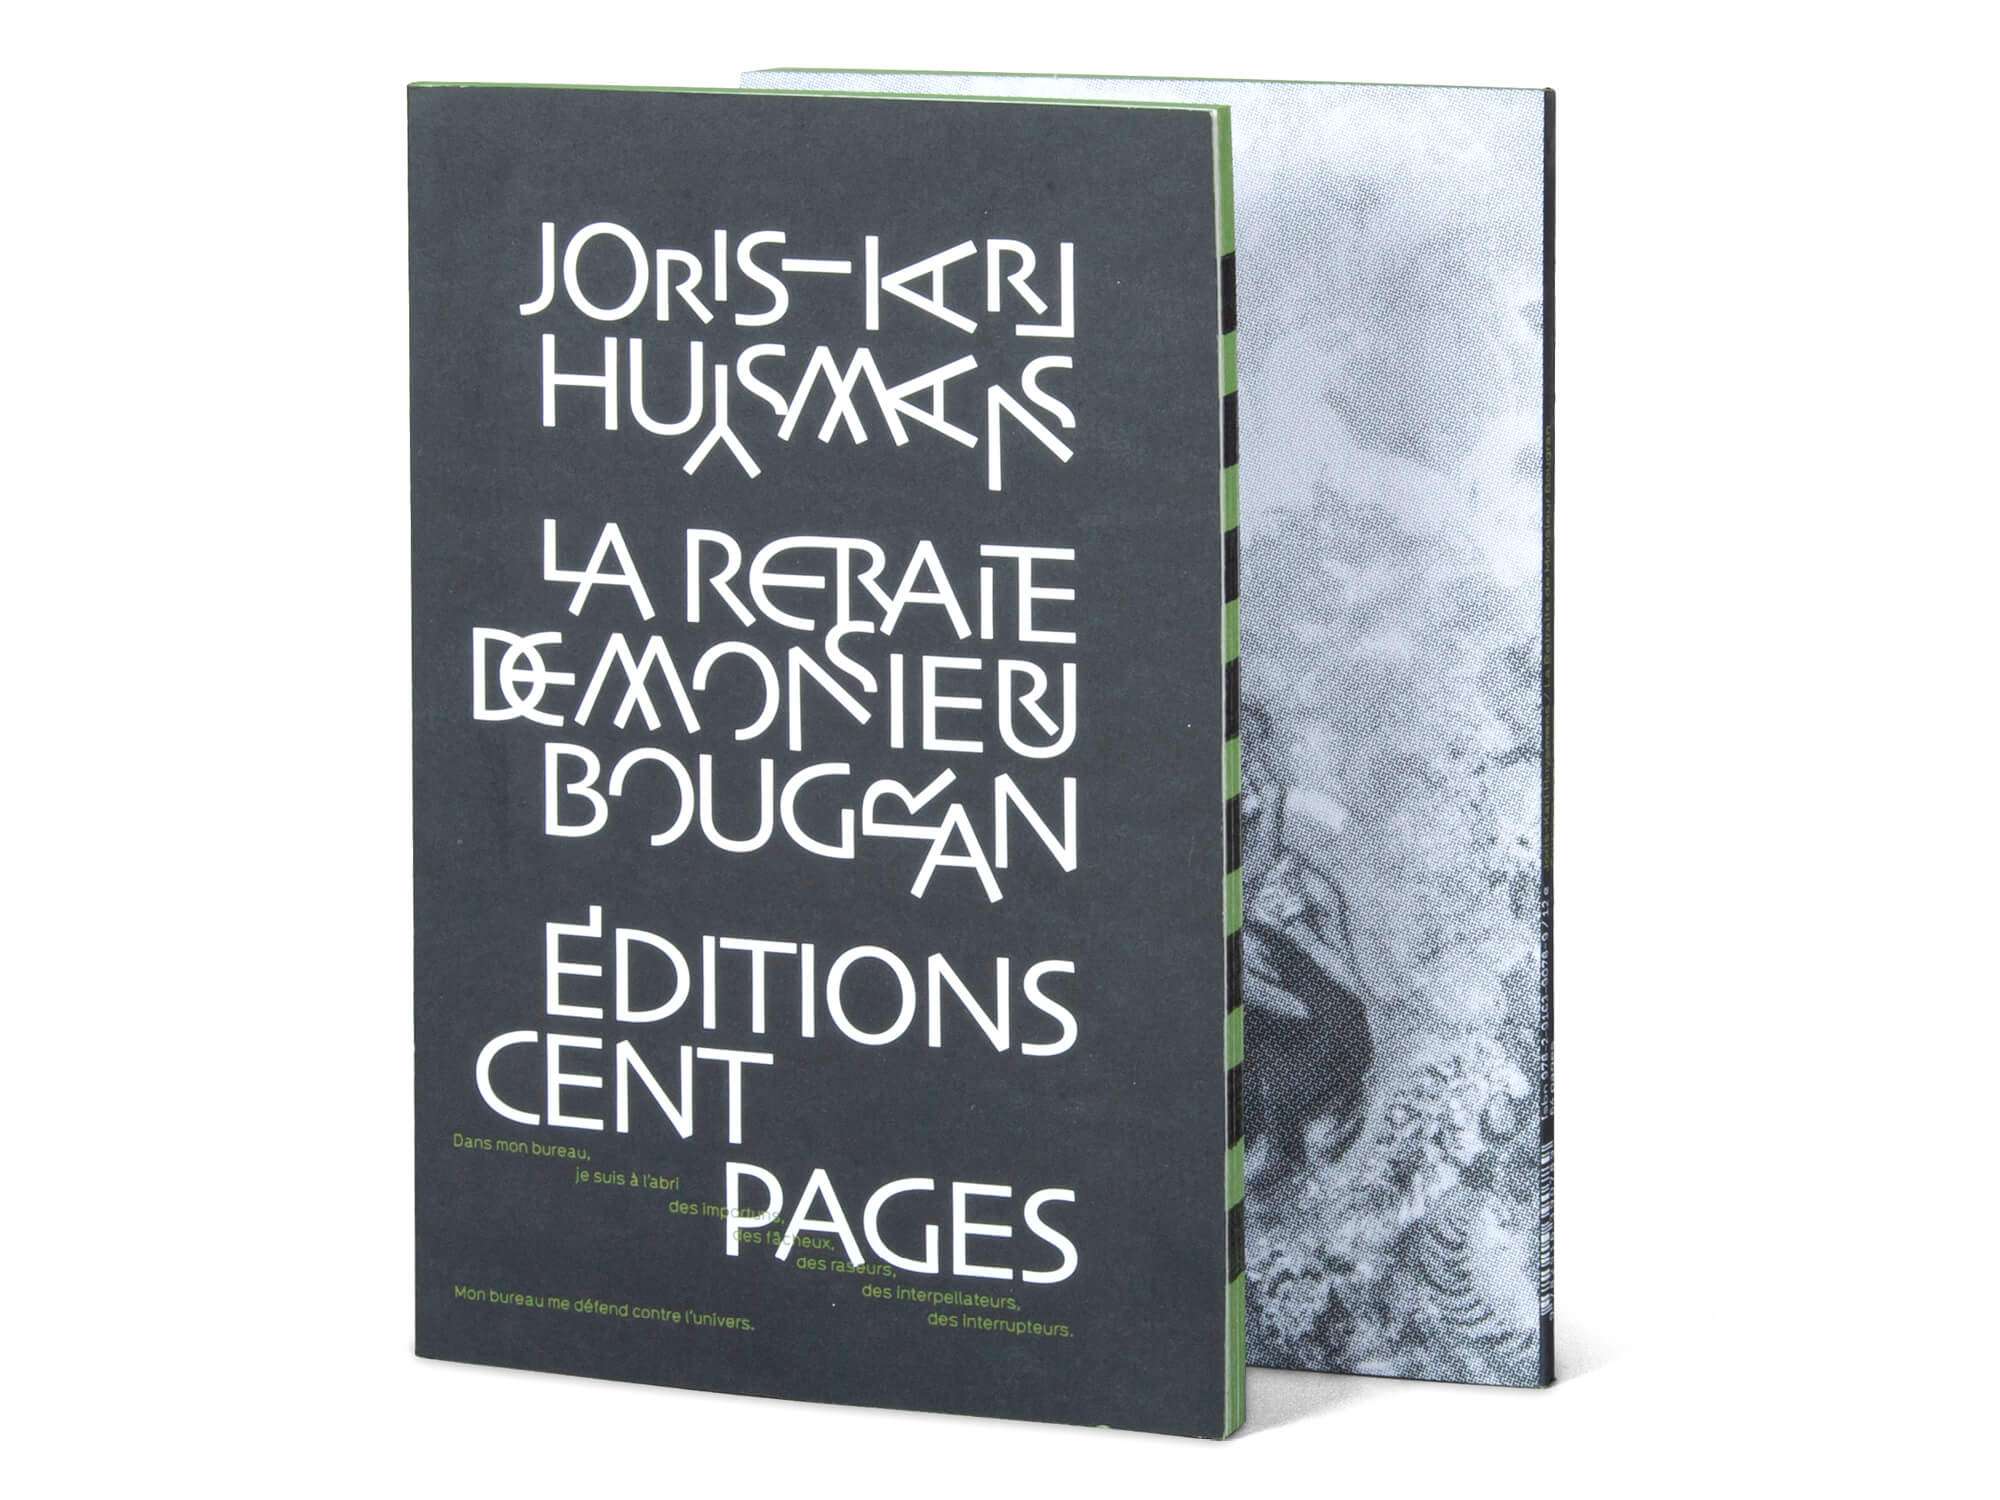 Couverture du livre La retraite de Mr Bougran de Joris-Karl Huysmans édité par les éditons Cent pages